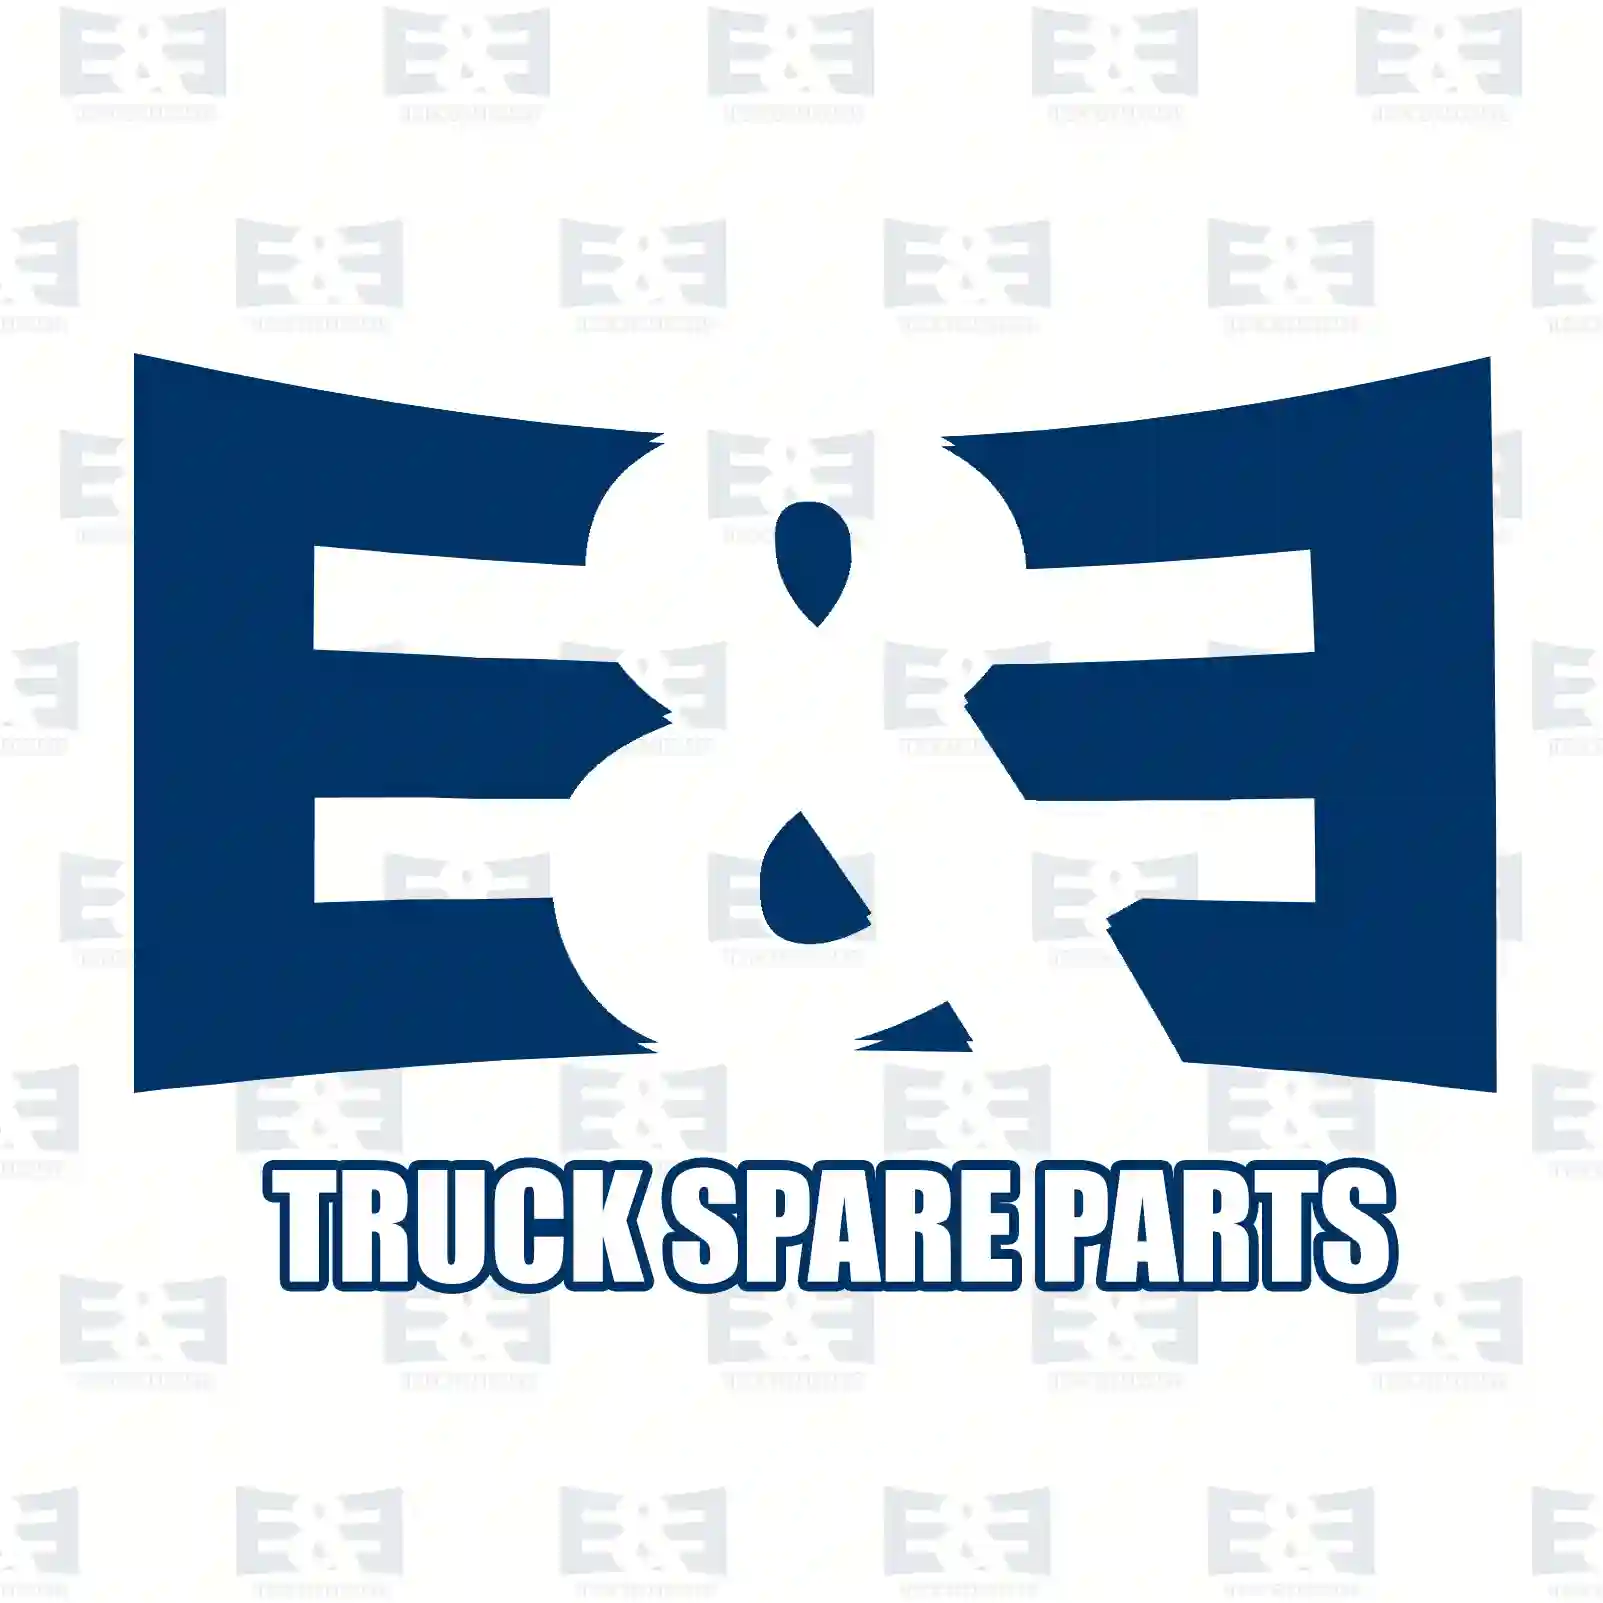  Bumper bracket, left || E&E Truck Spare Parts | Truck Spare Parts, Auotomotive Spare Parts